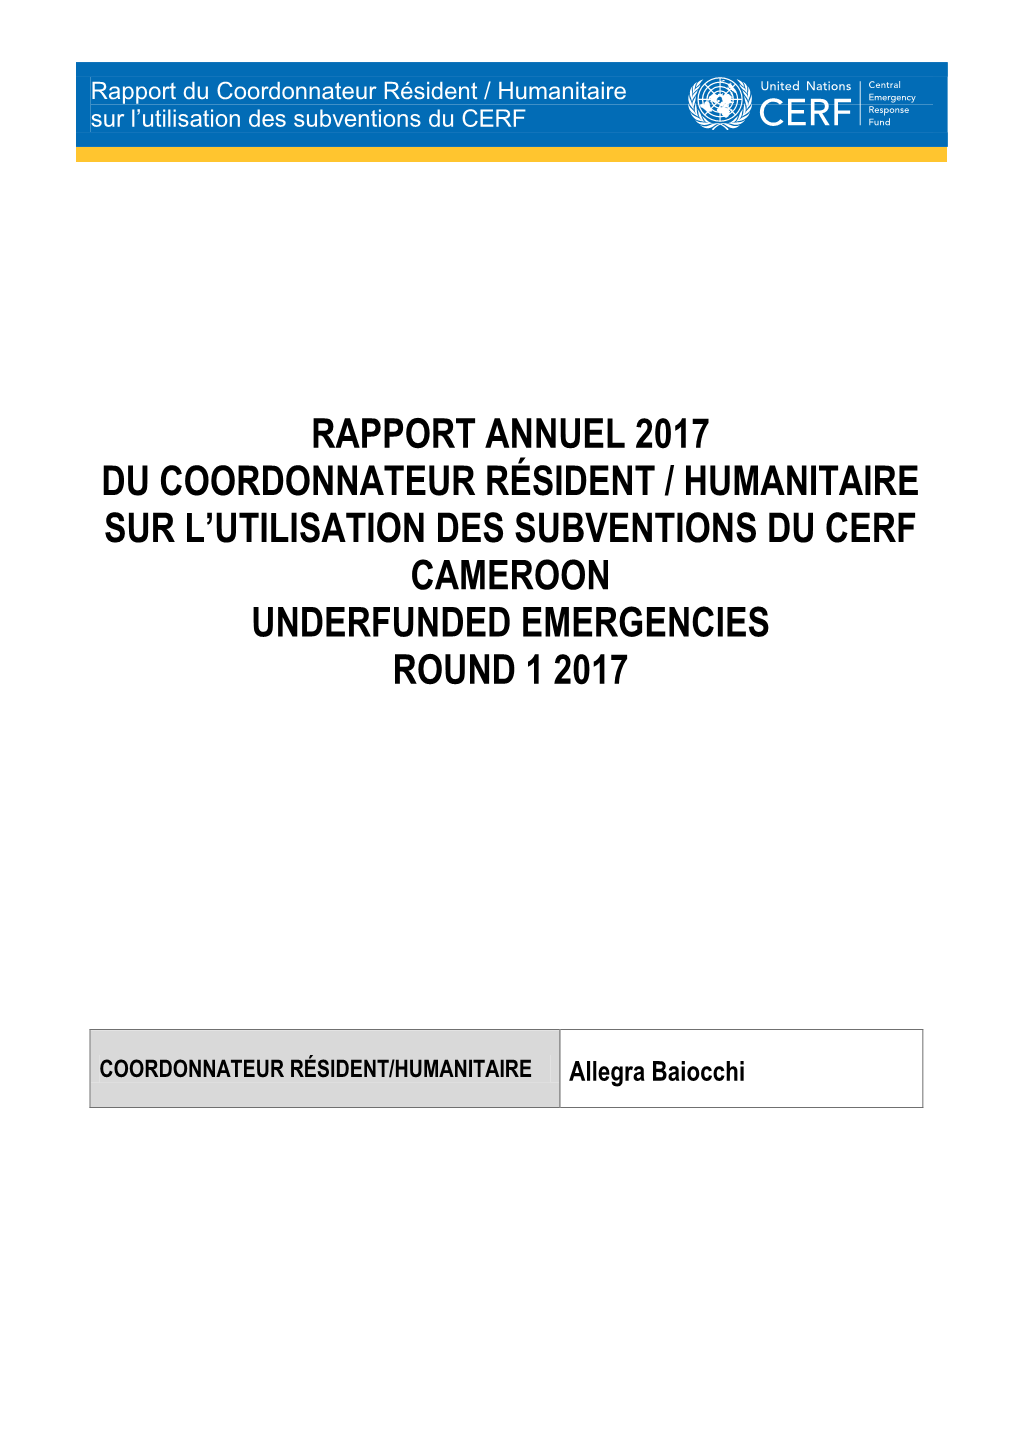 Rapport Annuel 2017 Du Coordonnateur Résident / Humanitaire Sur L’Utilisation Des Subventions Du Cerf Cameroon Underfunded Emergencies Round 1 2017